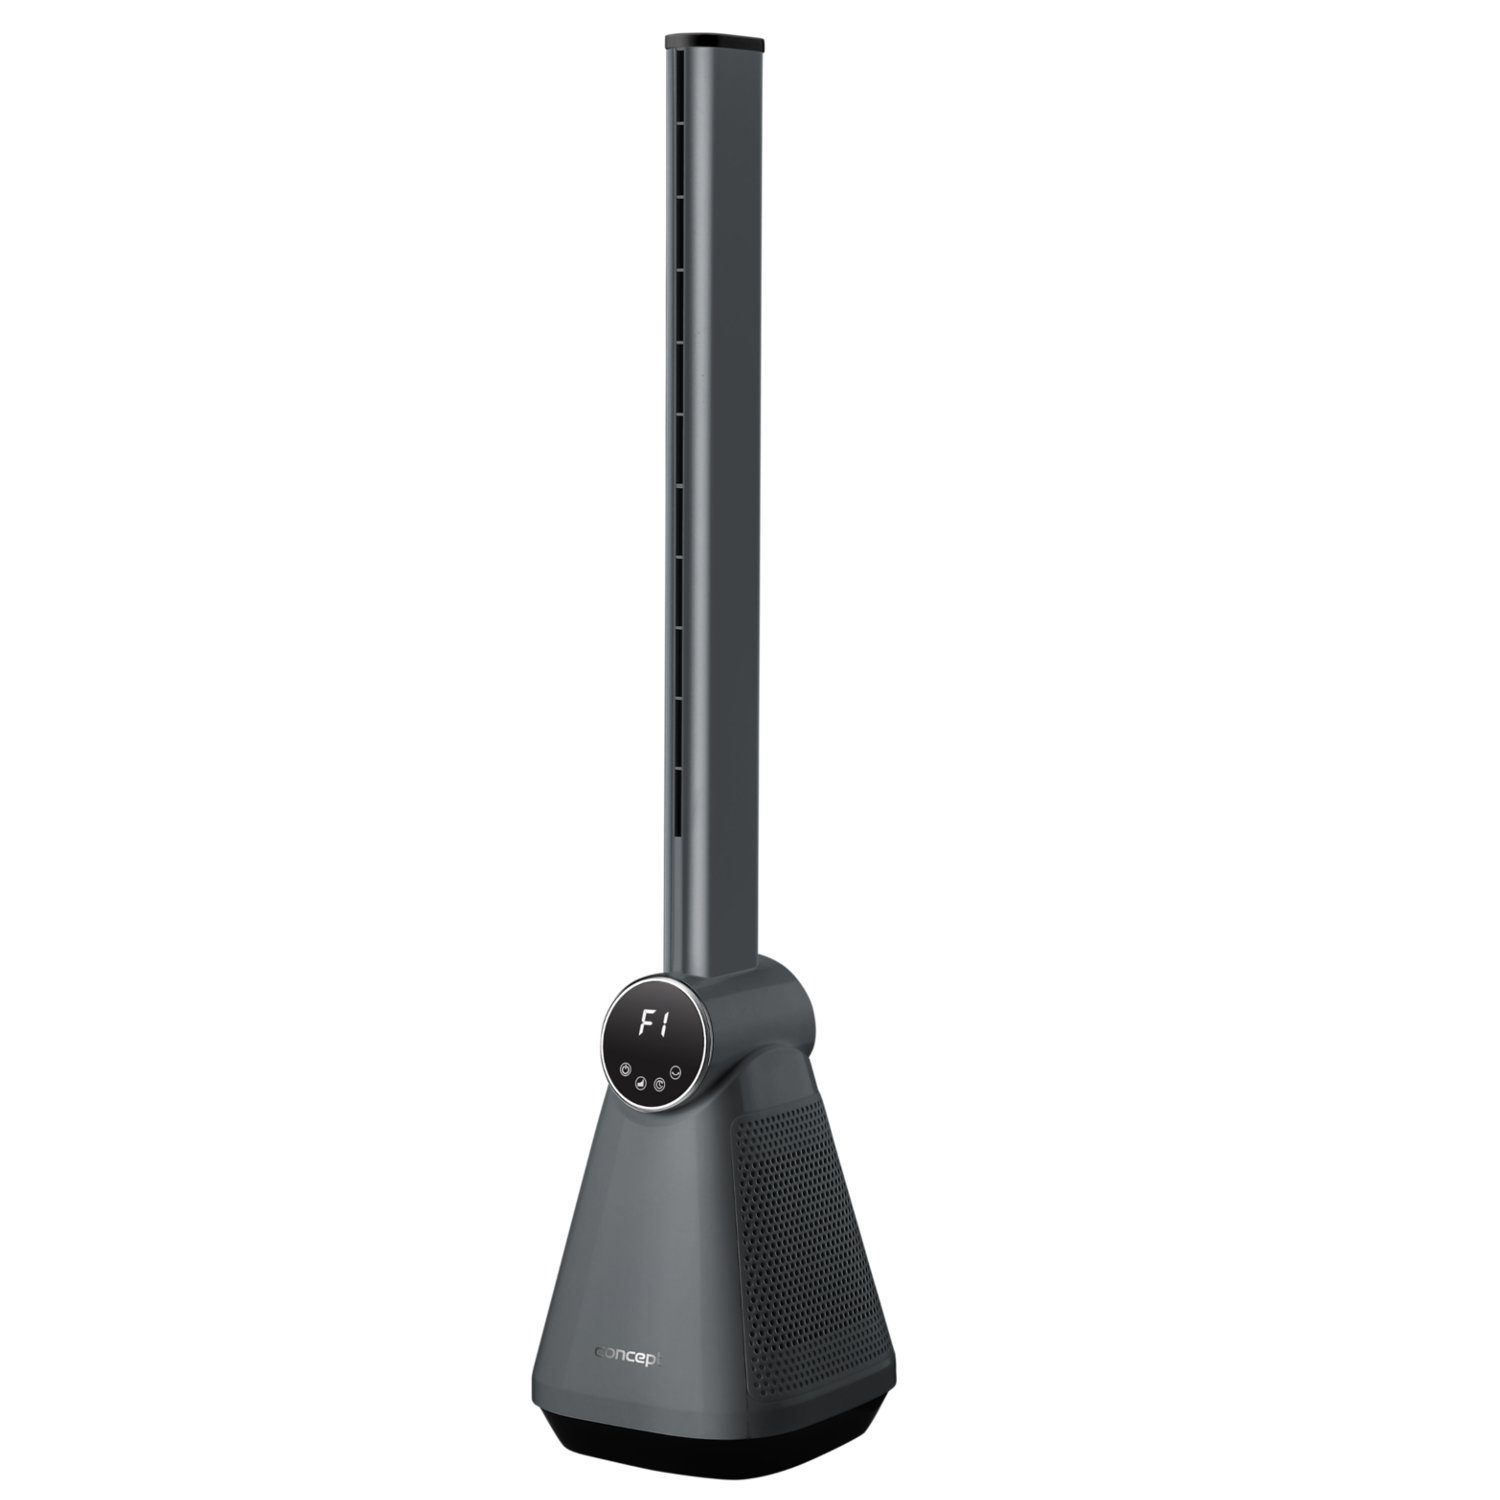 Concept Turmventilator VS5130, 50 W, 220-240 V, 50 Hz, 24x24x101cm